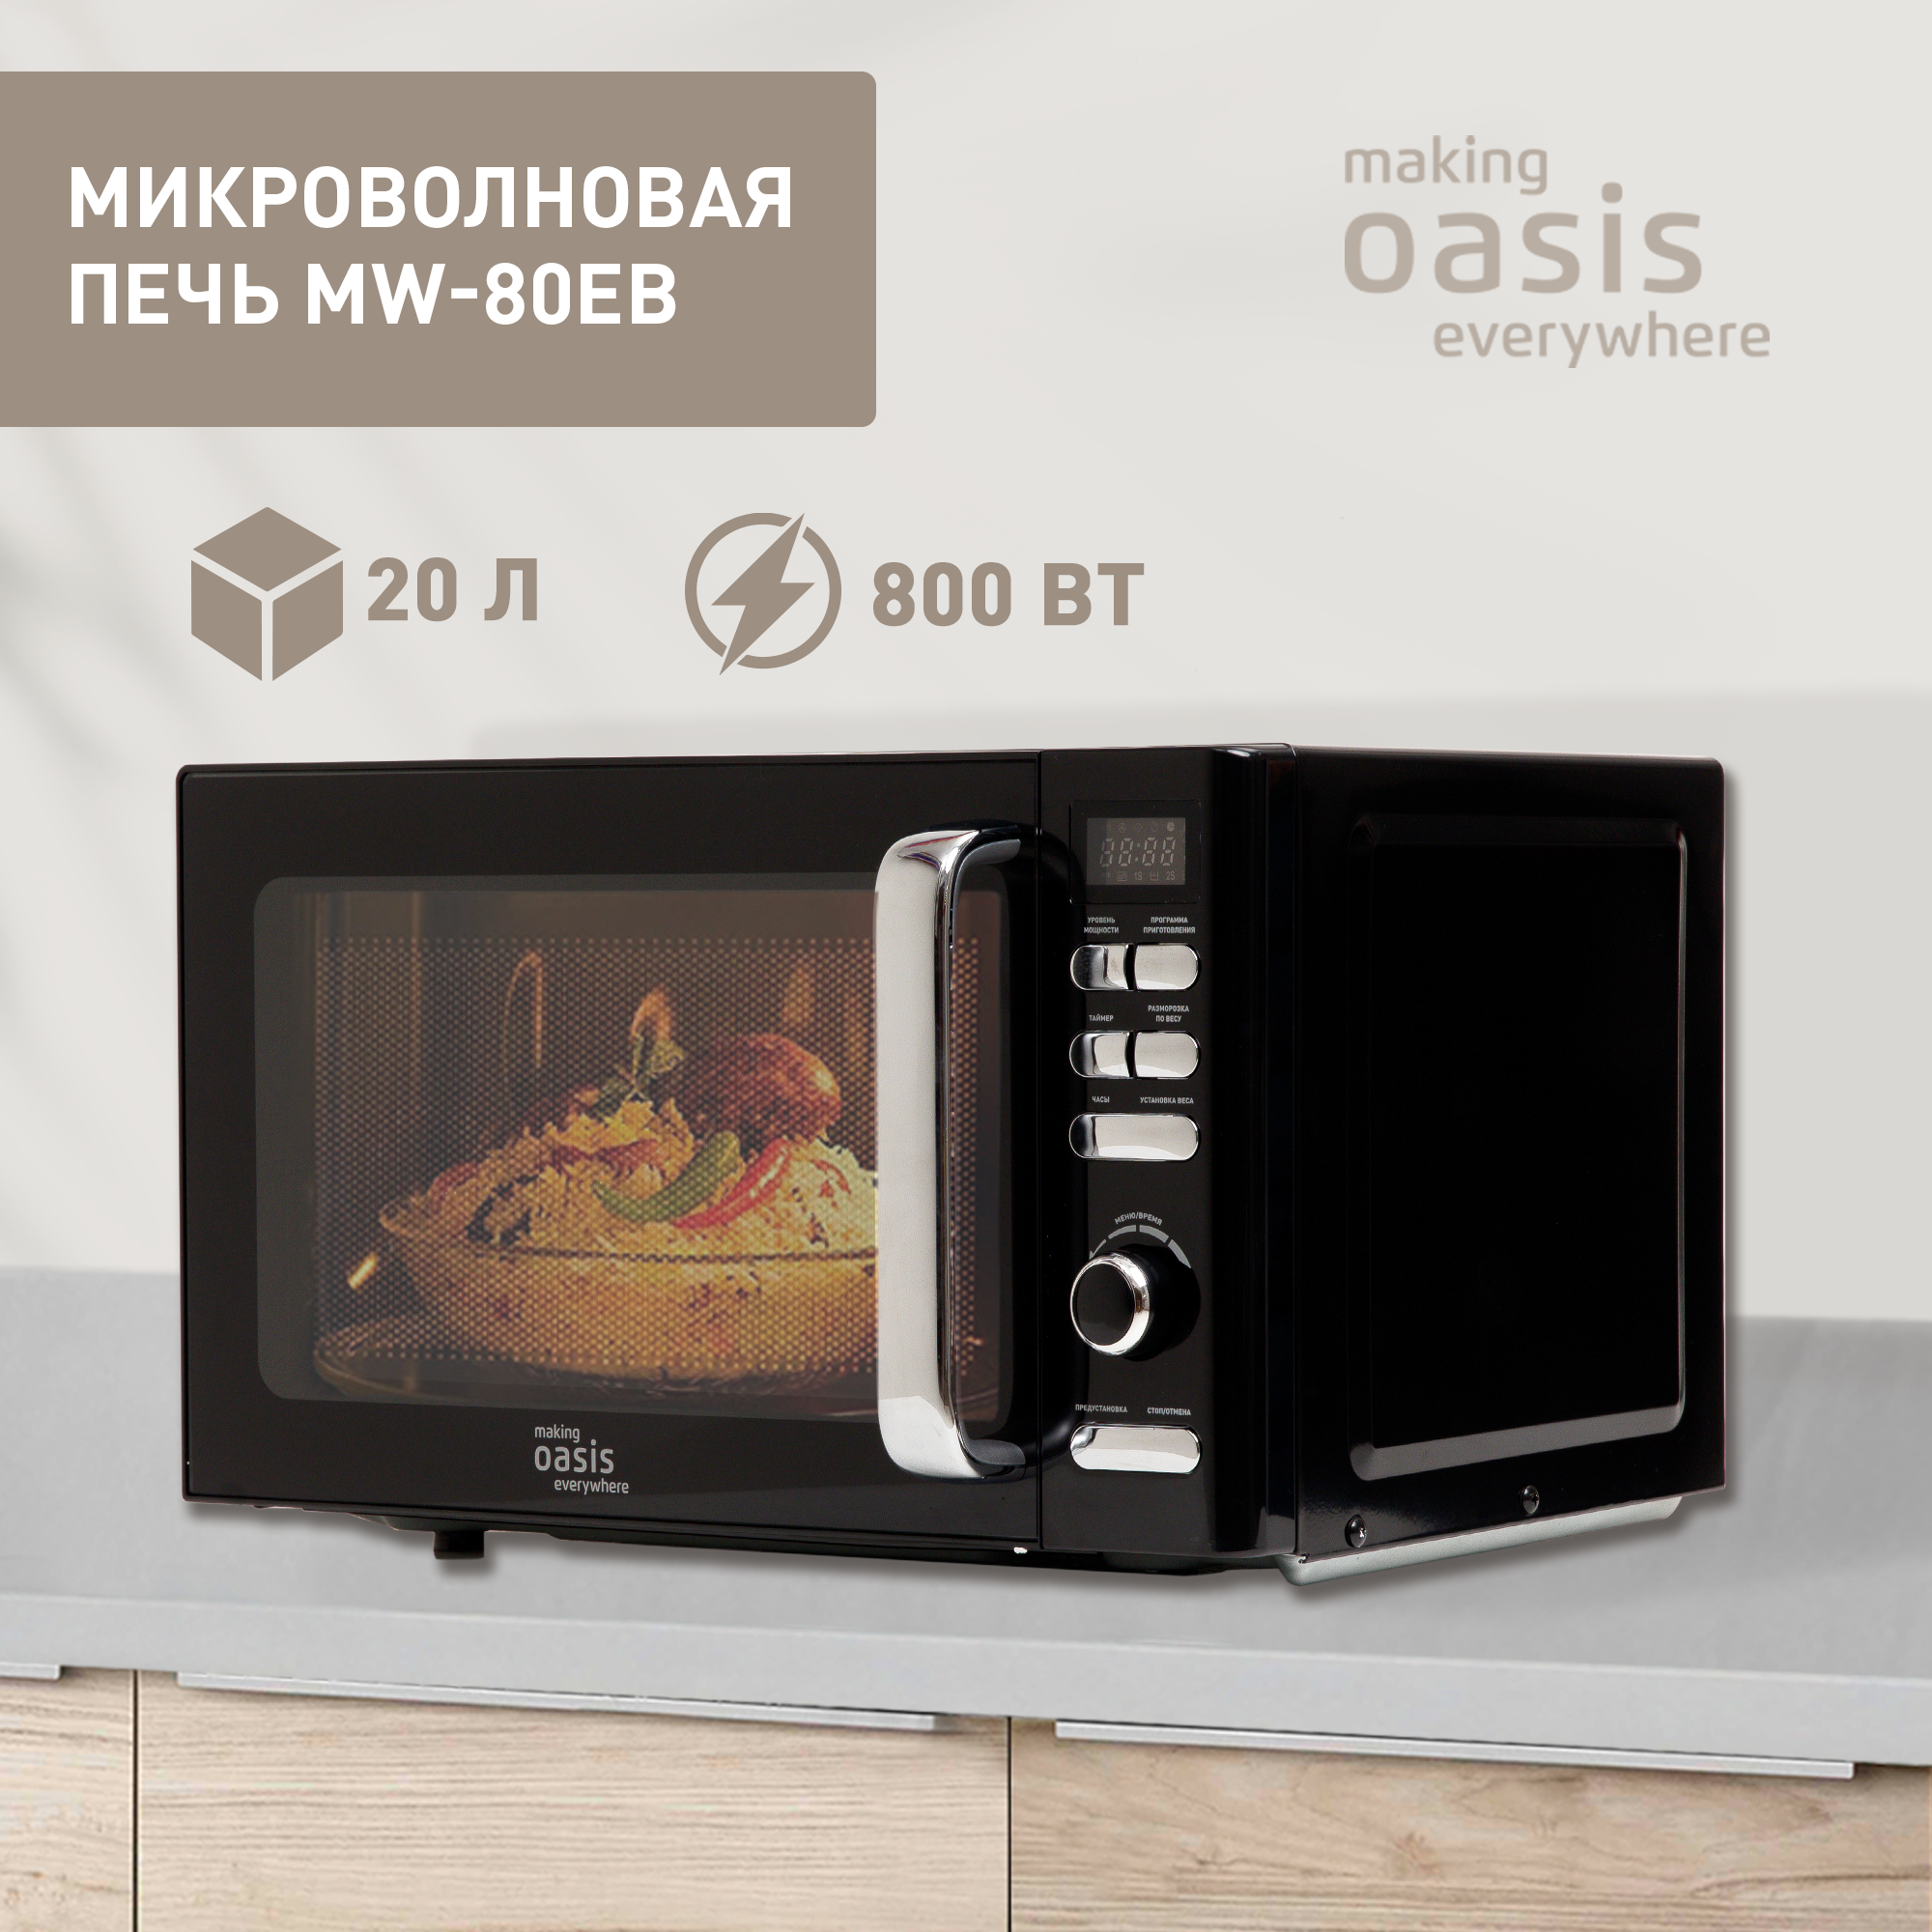 Микроволновая печь соло making oasis everywhere MW-80EB черный - купить в sotomania.ru, цена на Мегамаркет